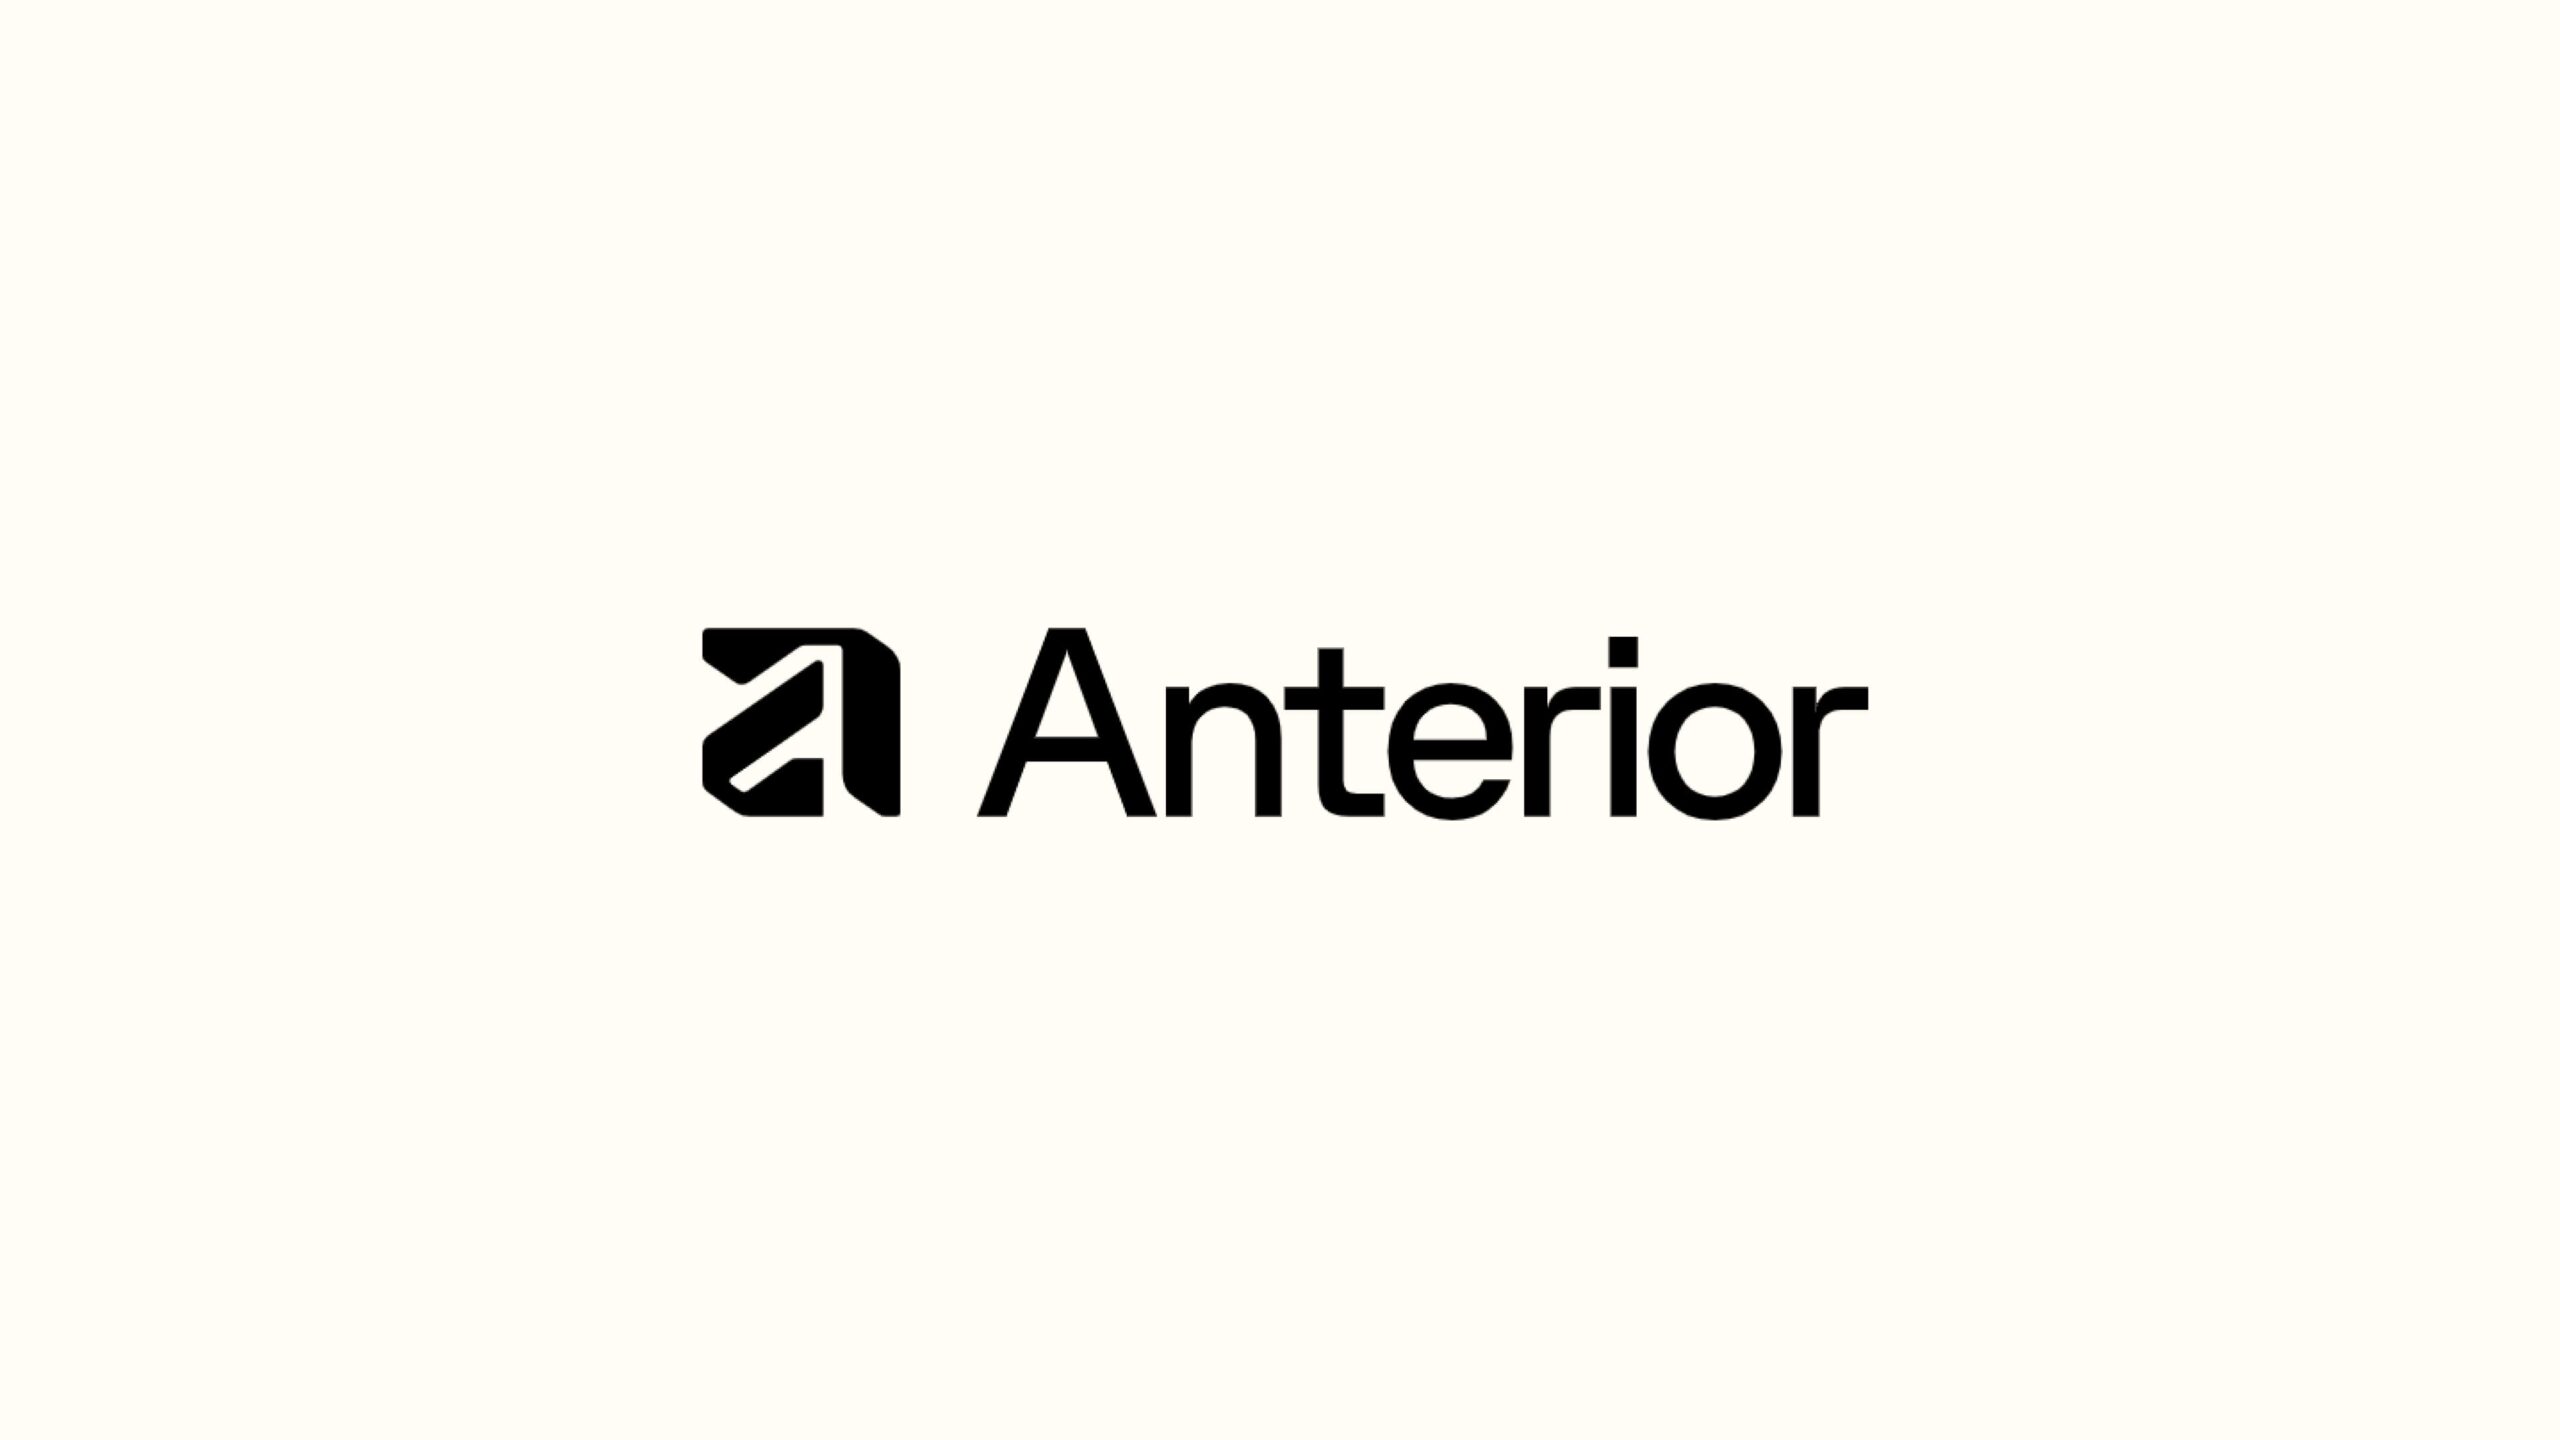 Anterior、シリーズAラウンドにて2,000万ドルの資金調達を実施